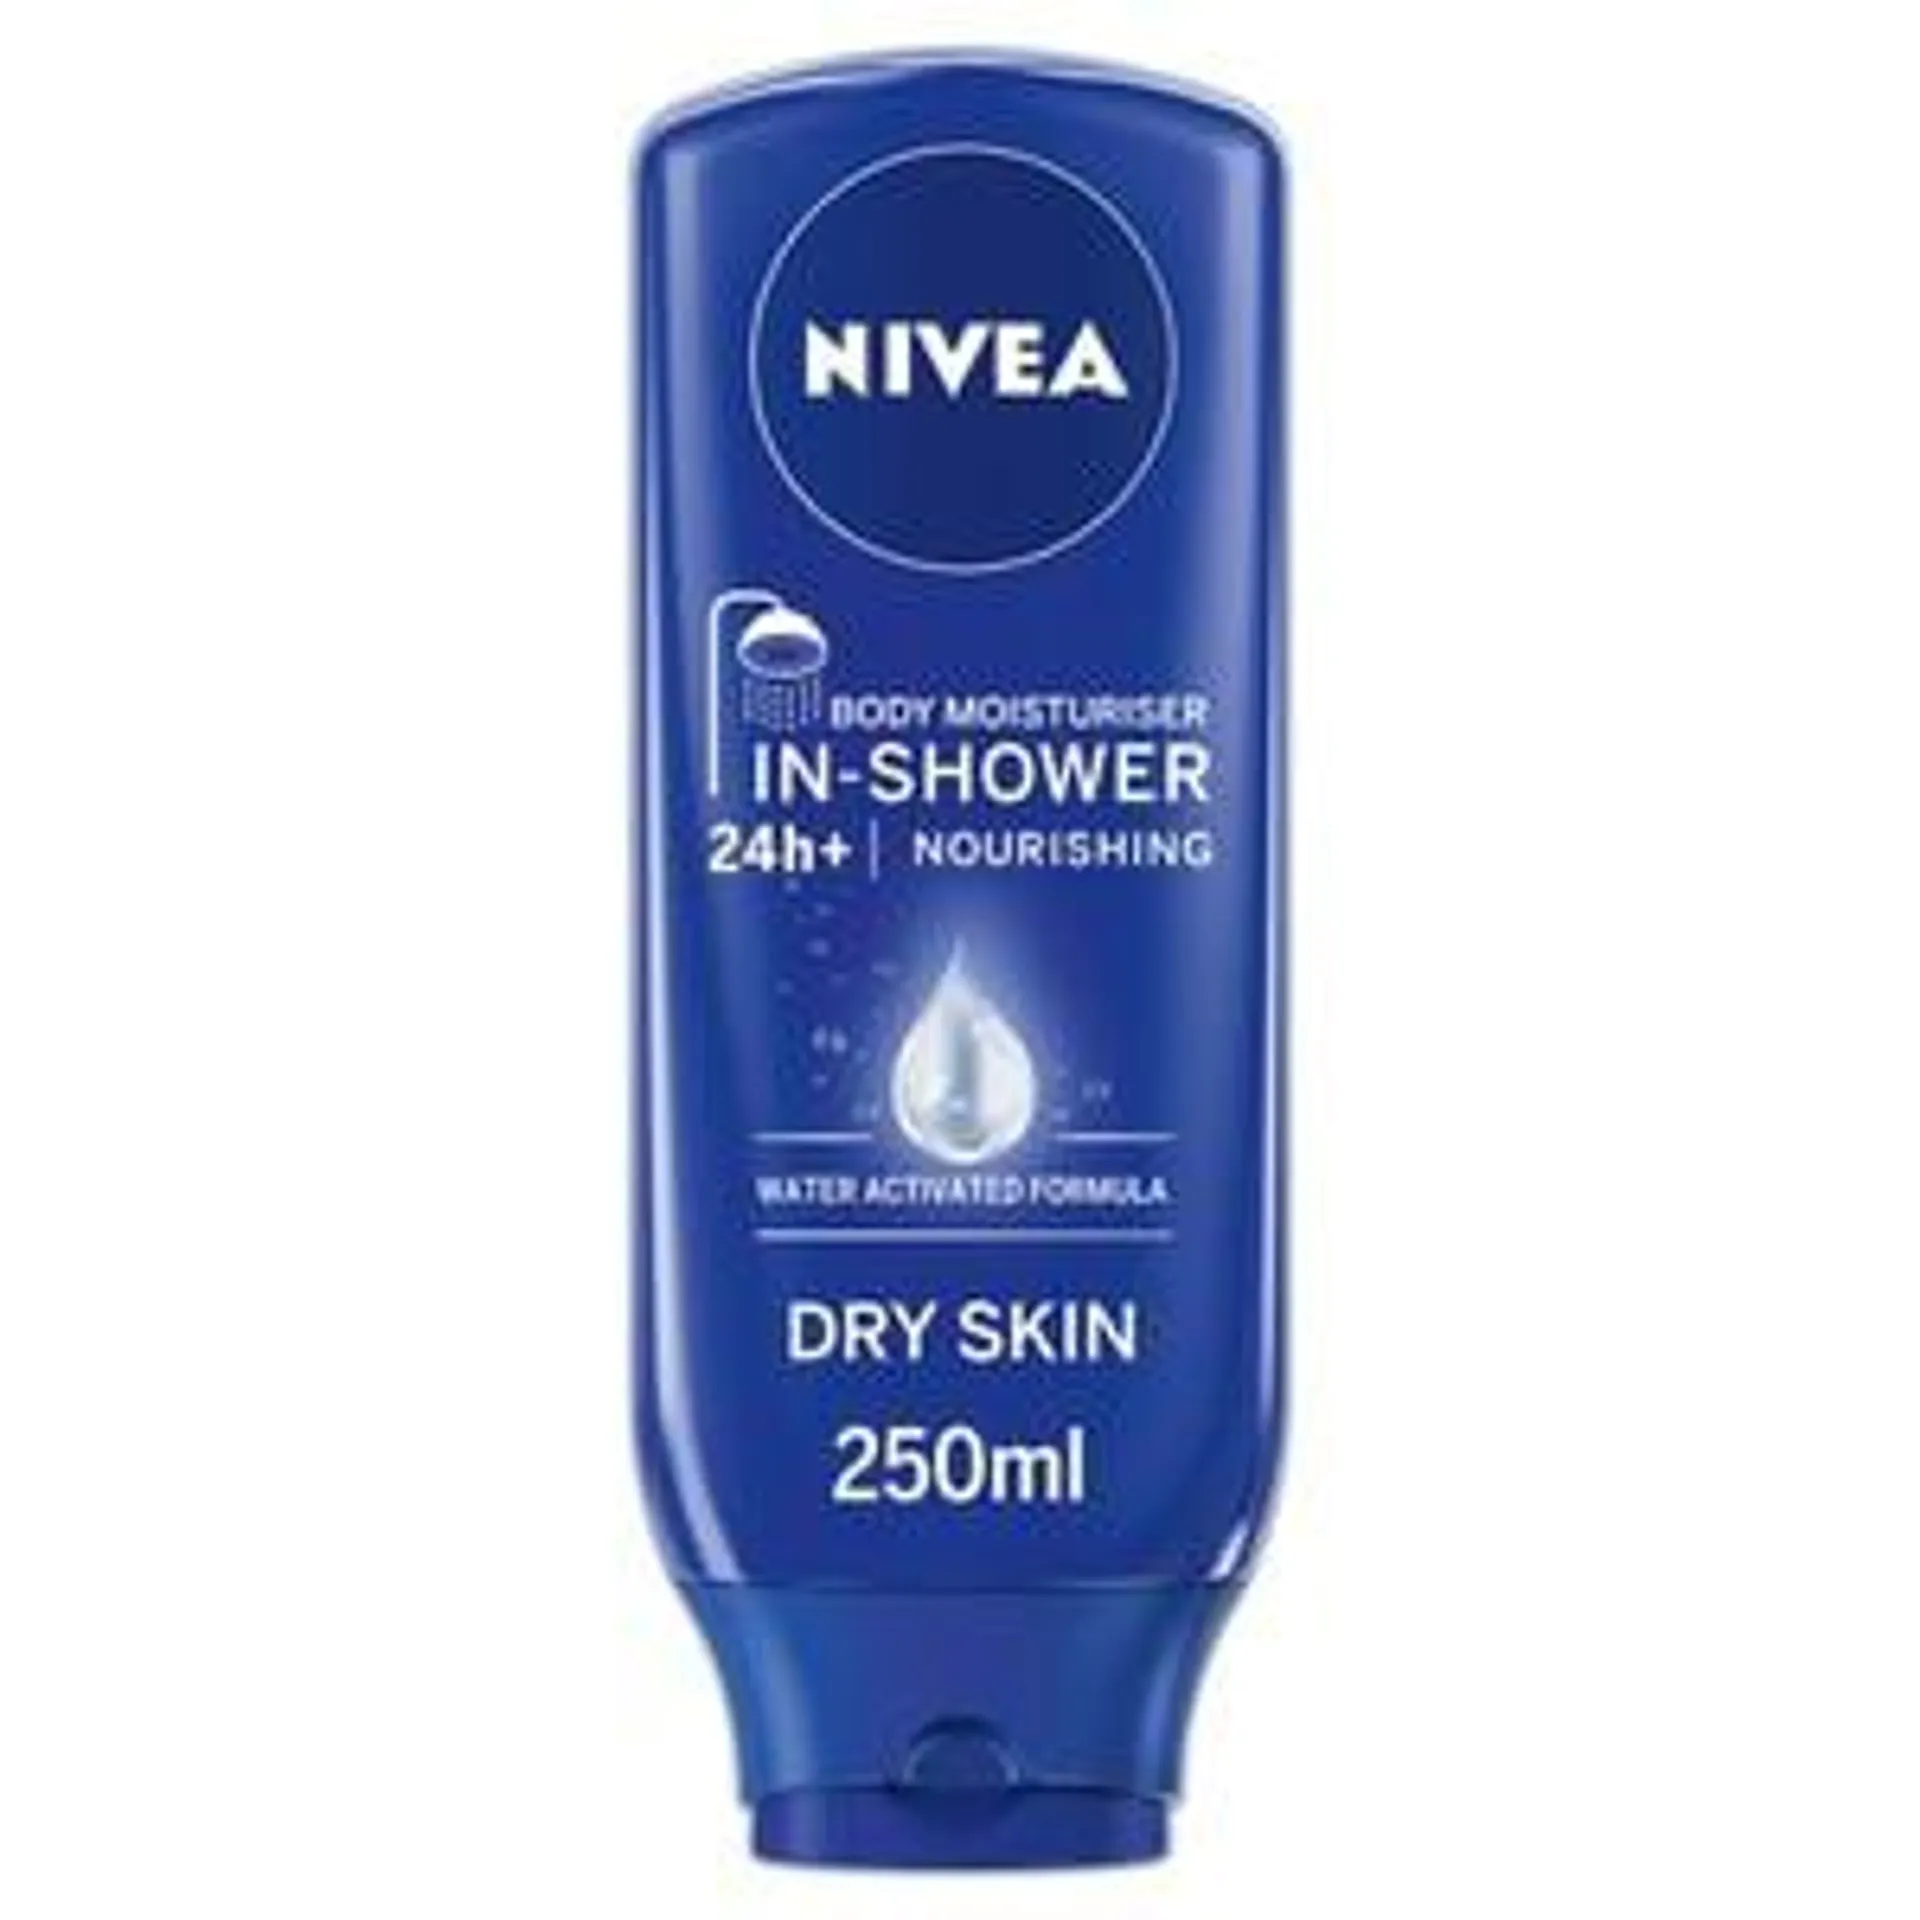 Nivea In-Shower Body Moisturiser For Dry Skin 250ml